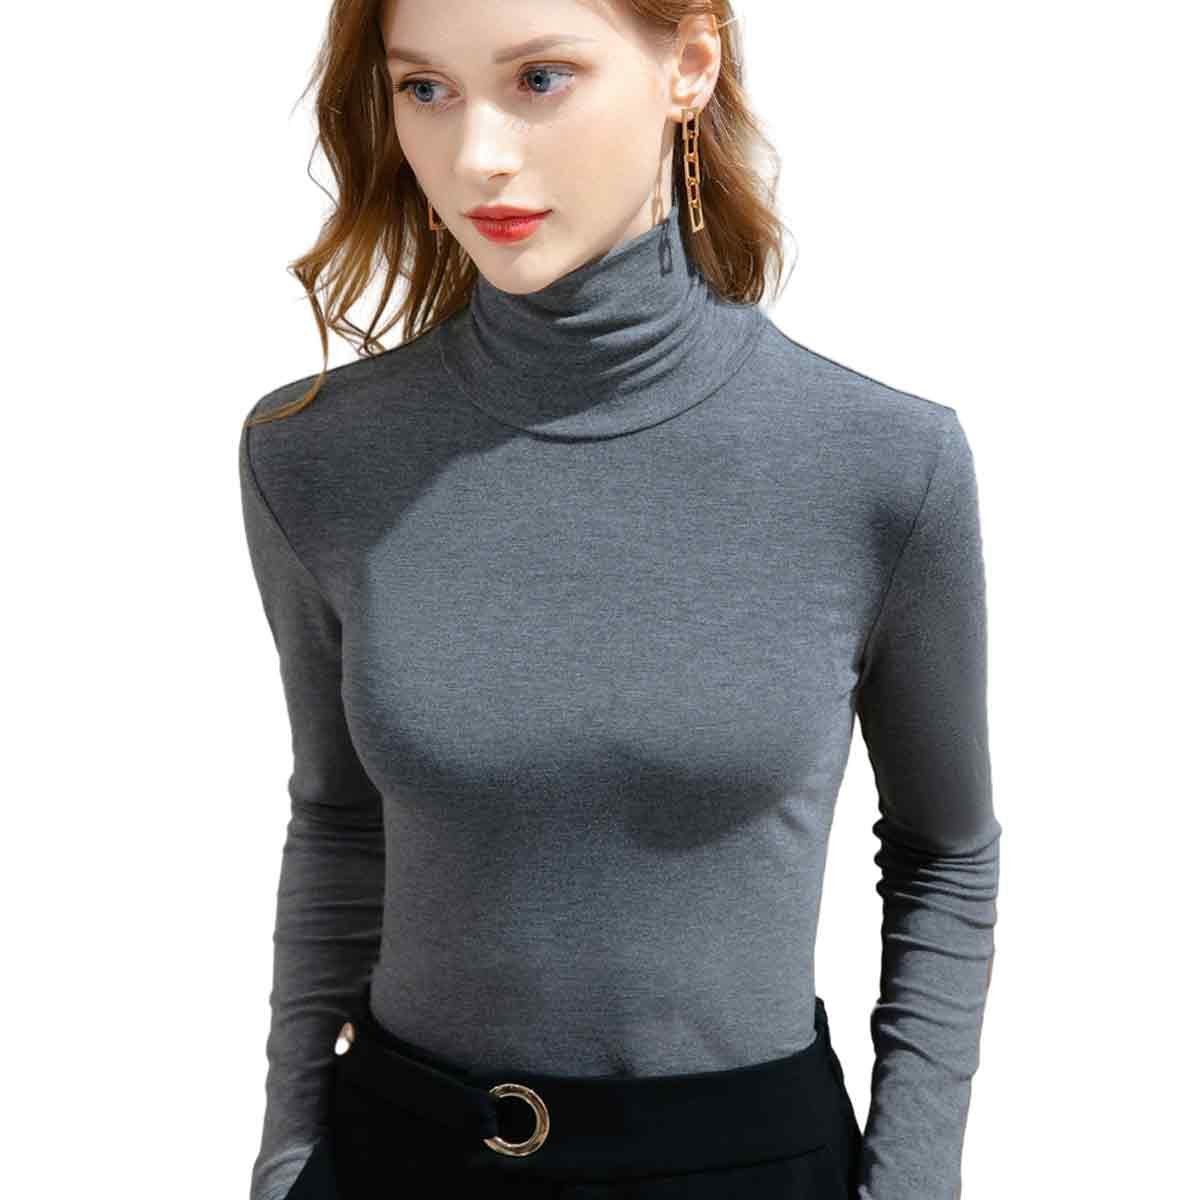 Jormftte Thermounterhemd Damen Elegant Pullover Slim Fit Langarm für Winter Oni Grey